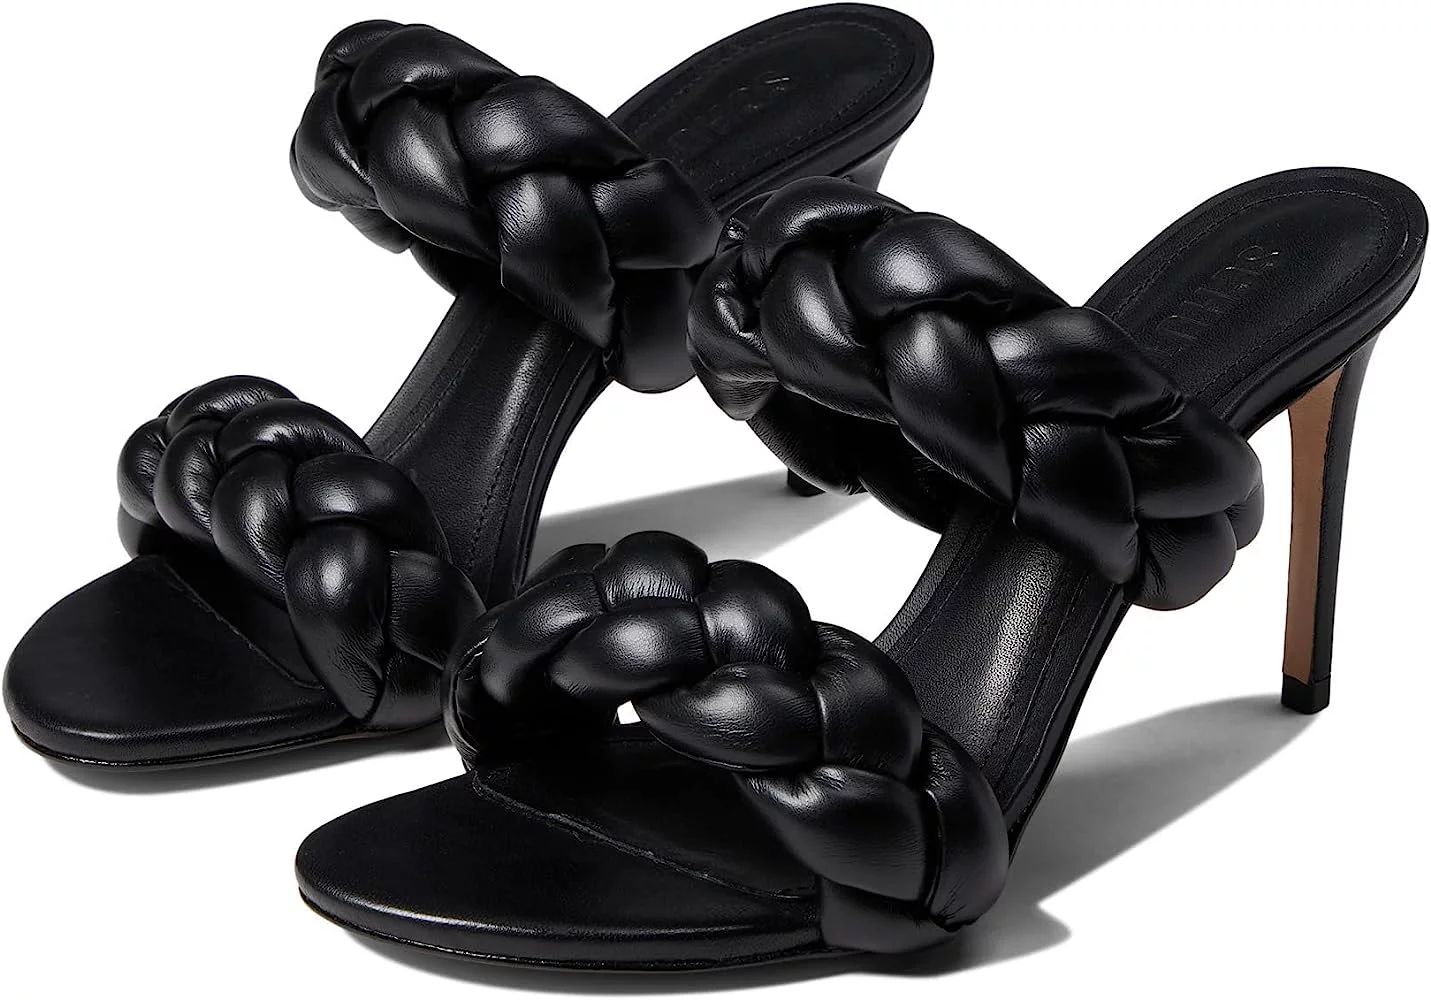 Schutz Soo Black Leather Braided Straps Slip On Open Toe Stiletto Heel Sandals (BLACK, 10) | Walmart (US)